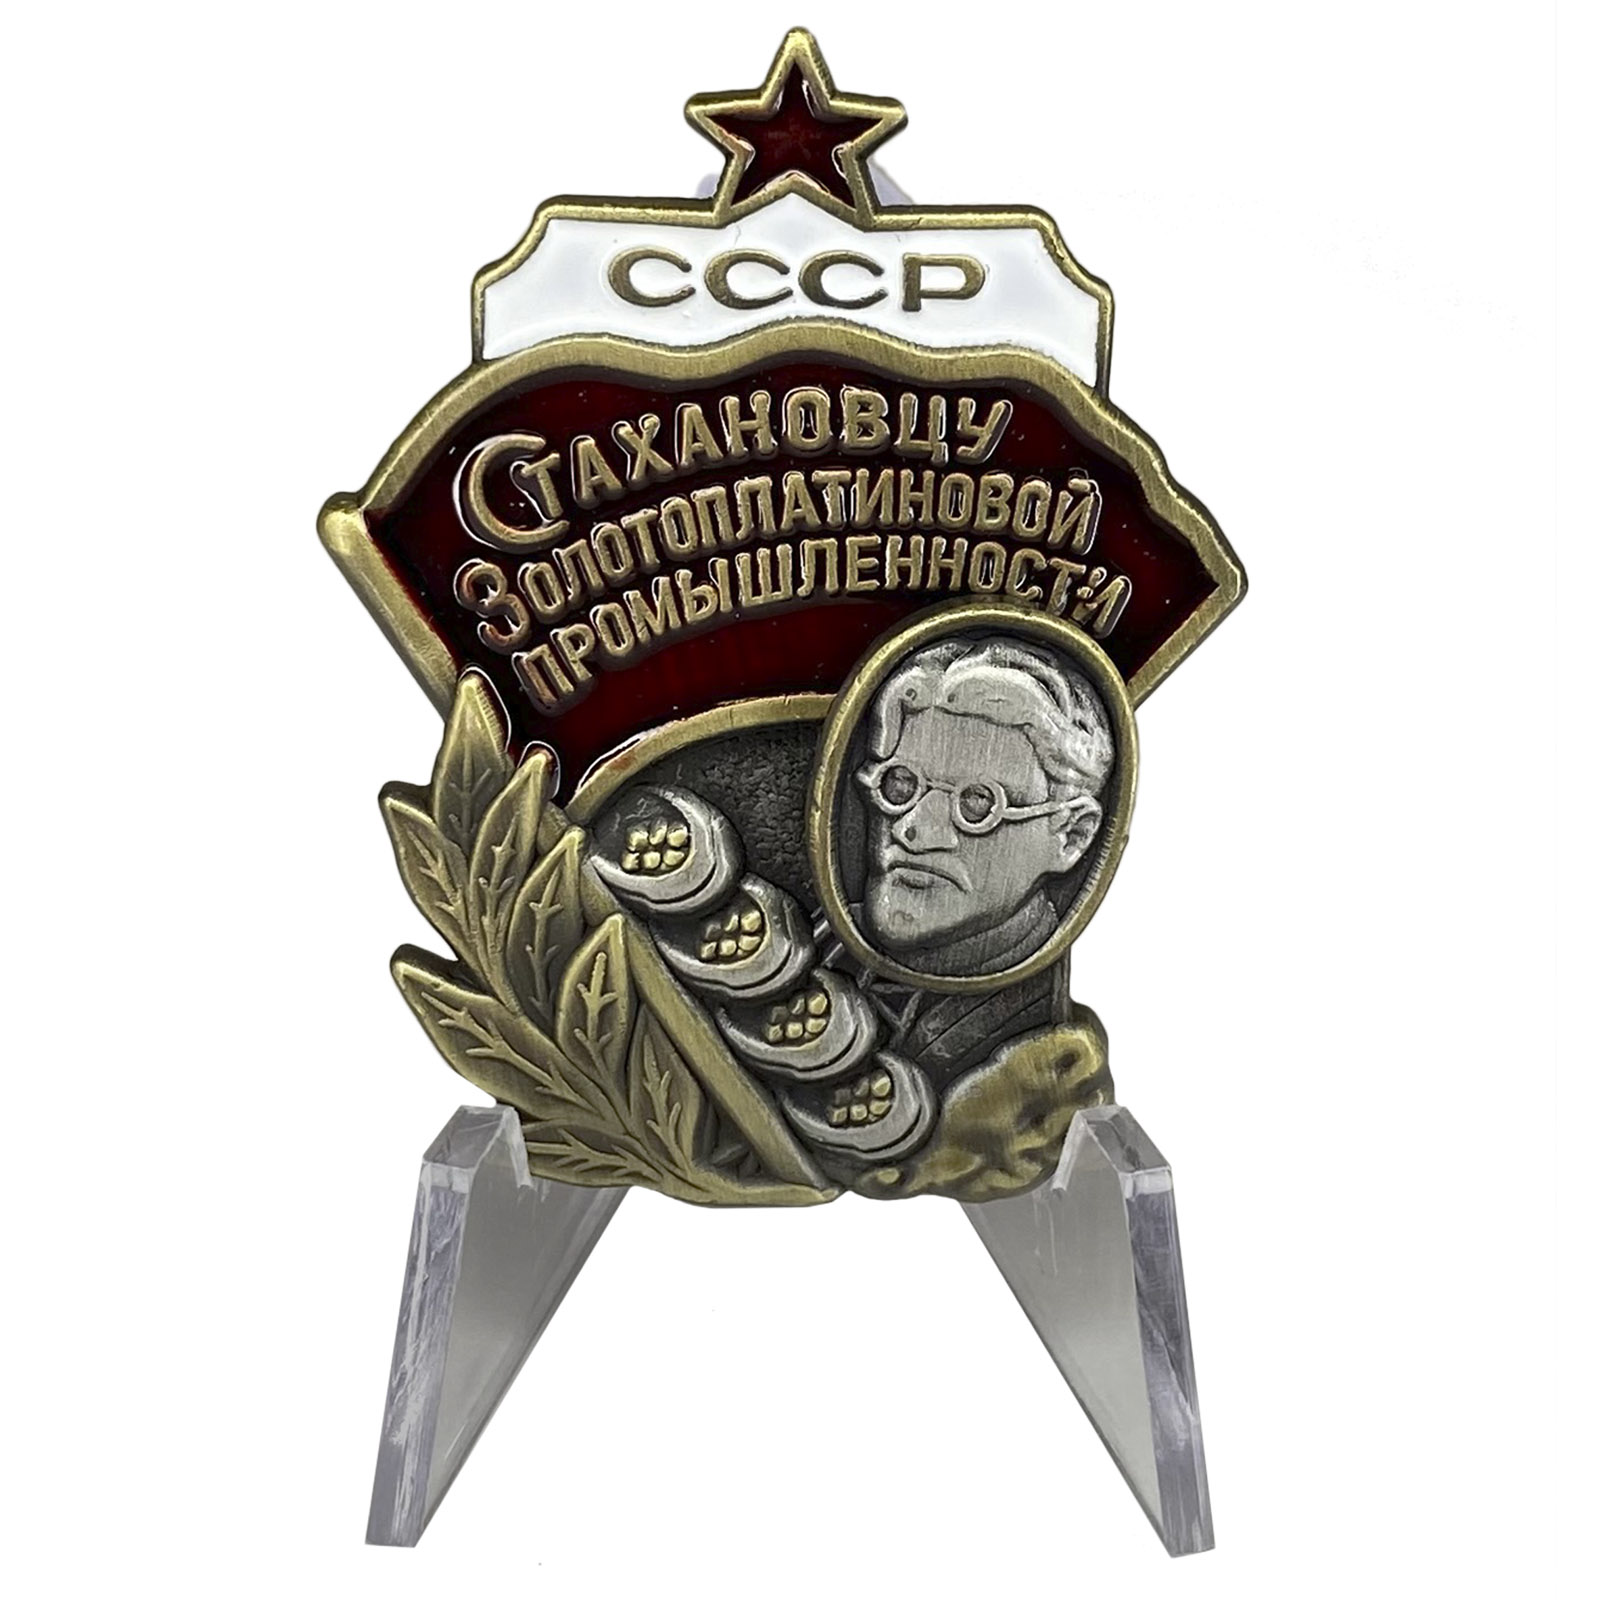 Купить знак Стахановцу золотоплатиновой промышленности СССР на подставке онлайн